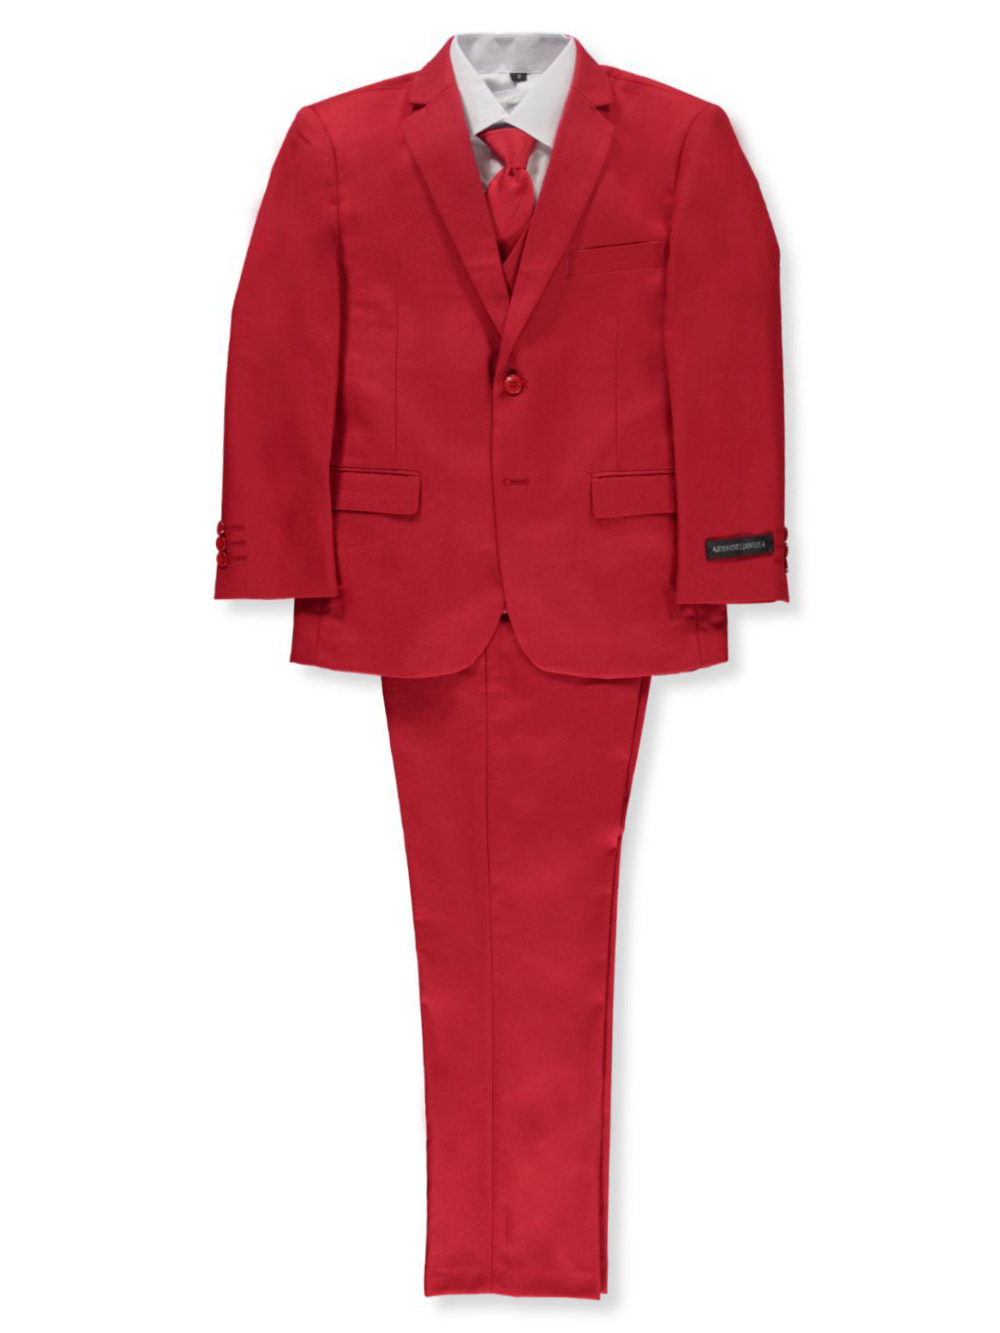 Boys Suits #LTS13 | Boy's Suits & Accessories | White Elegance